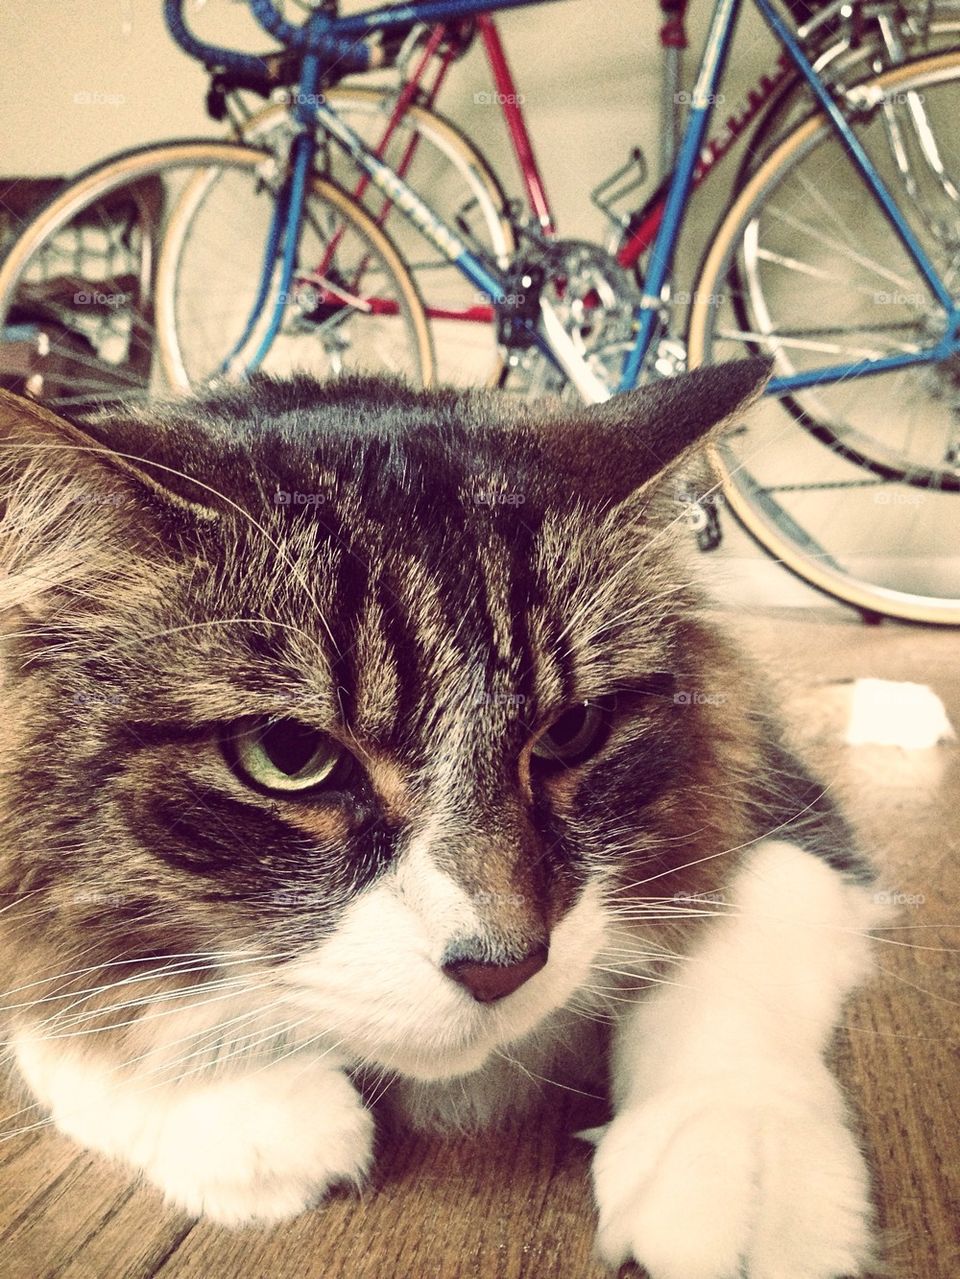 Cat and Bikes